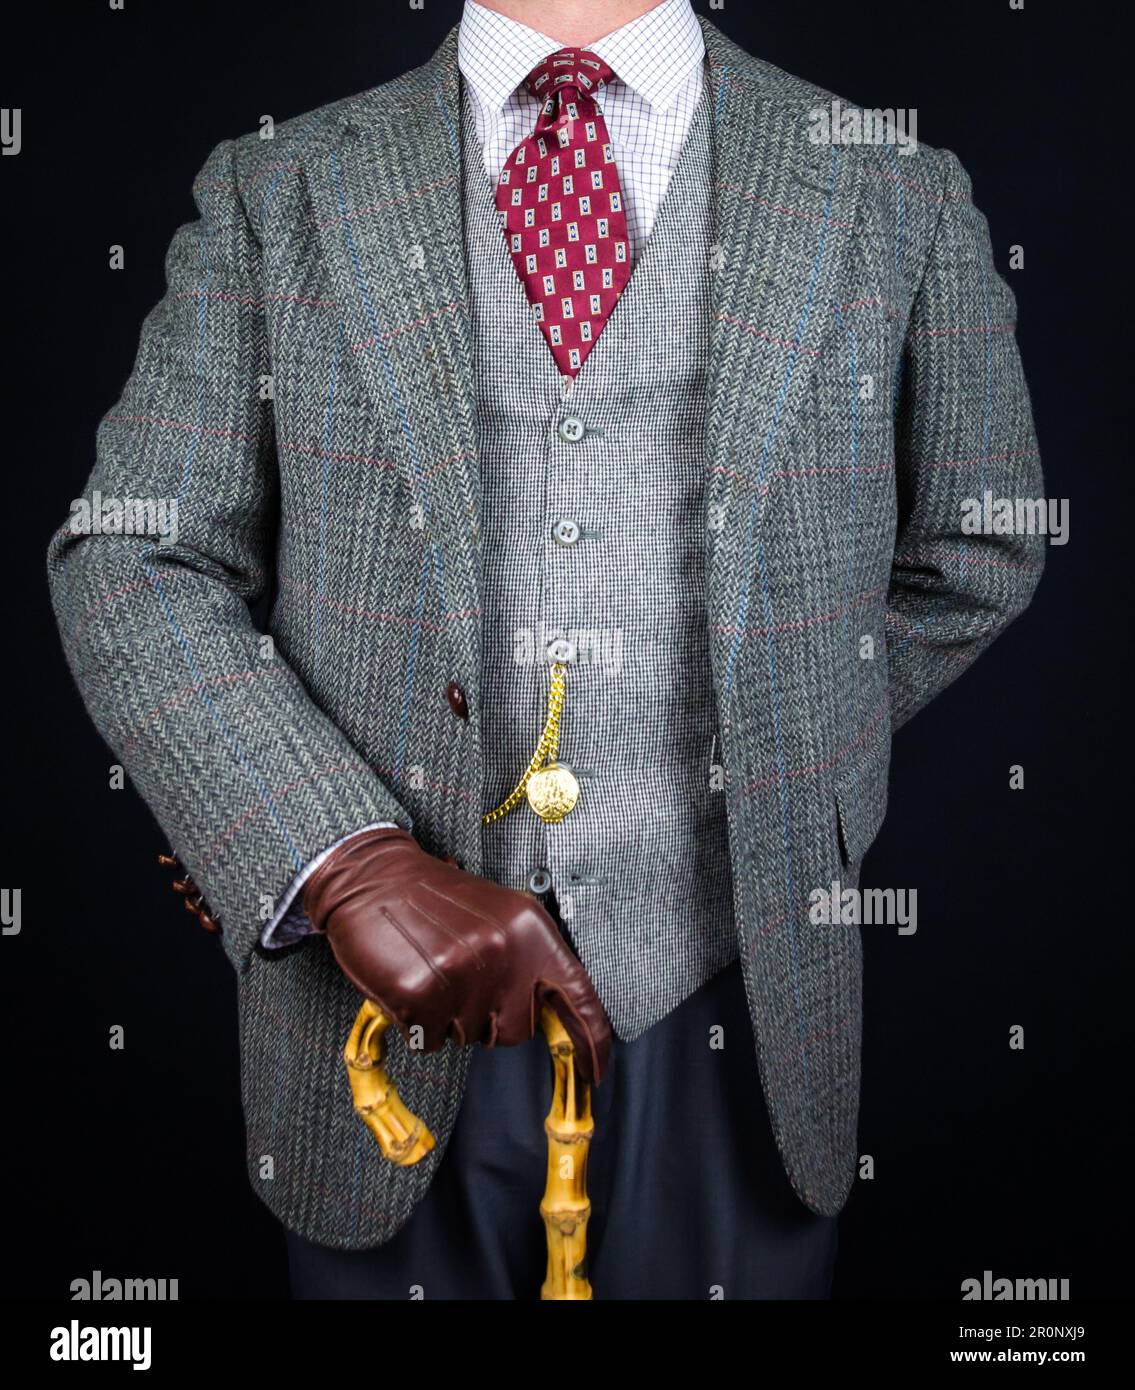 Portrait de l'homme en costume en tweed et gants en cuir tenant un parapluie. Style vintage et mode rétro de gentleman anglais classique. Banque D'Images